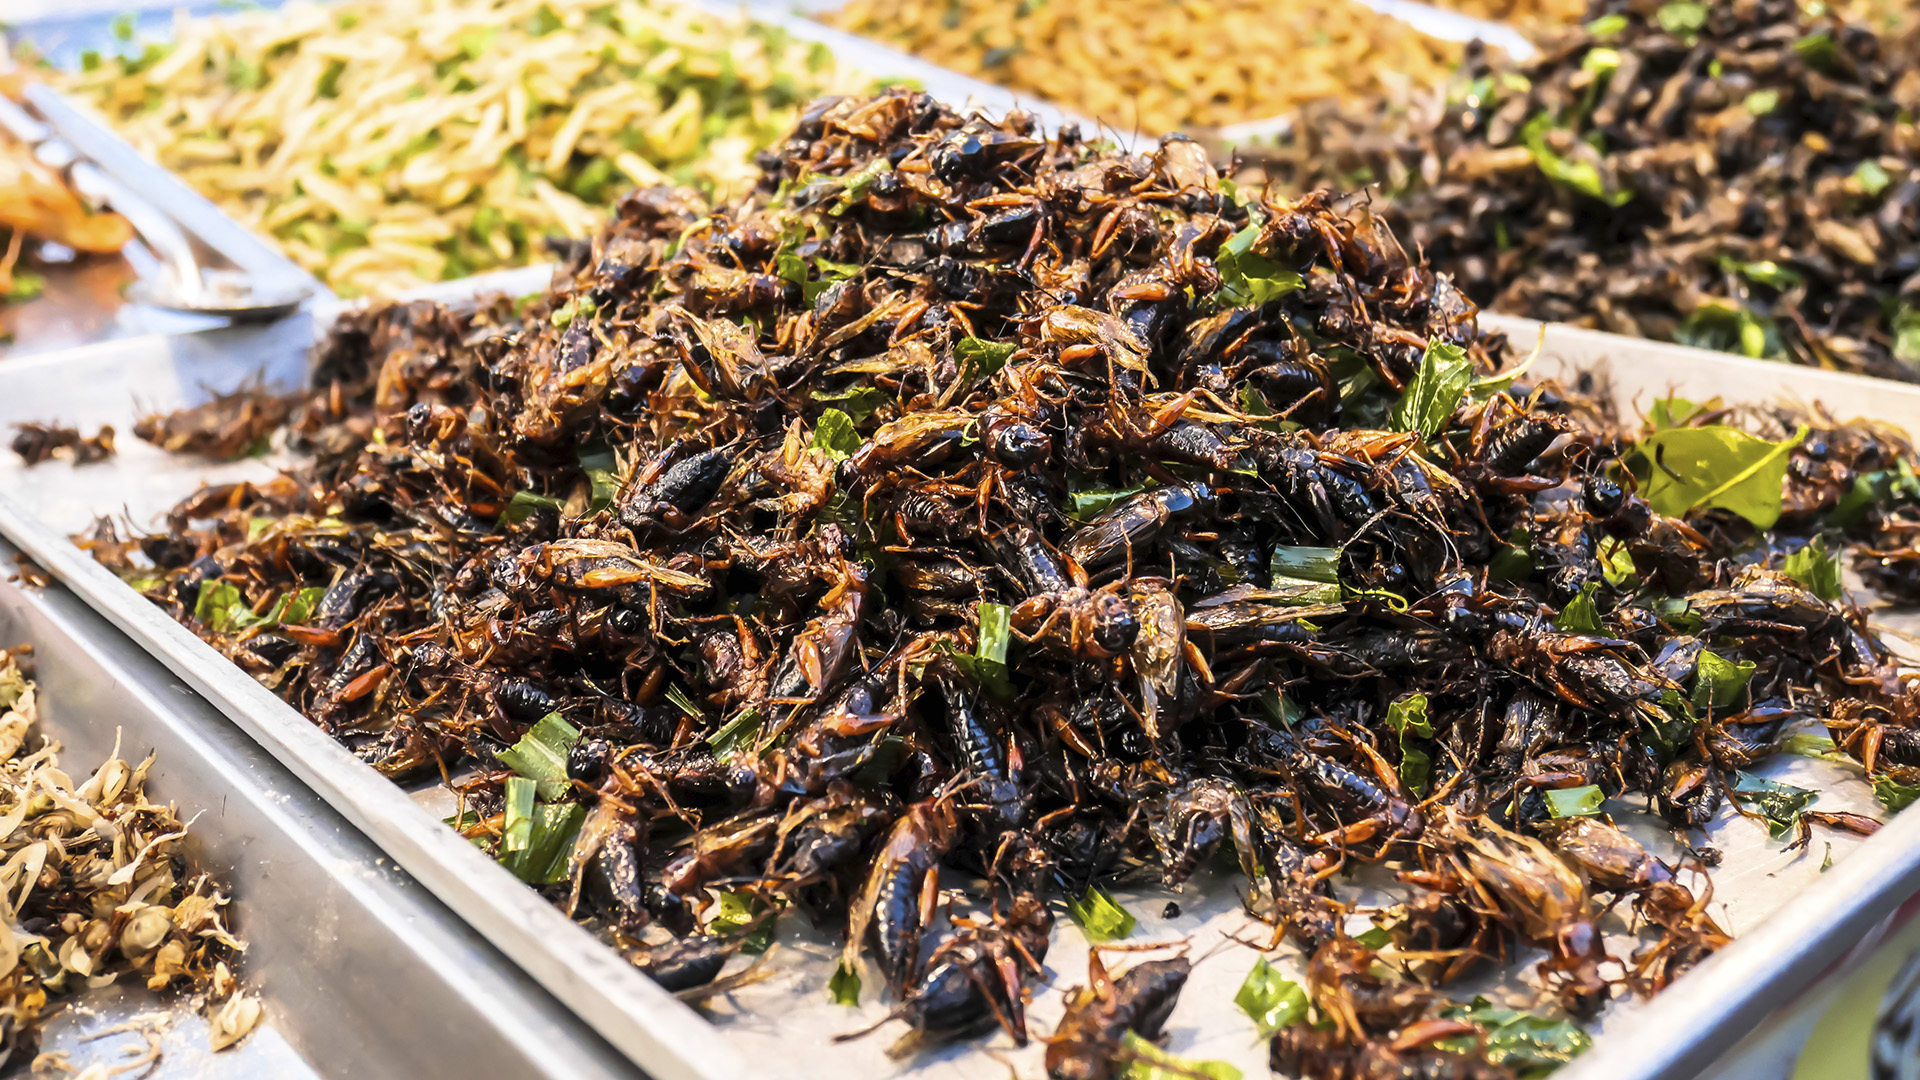 Consumul de insecte se extinde! Alte cereri așteaptă verdictul Comisiei Europene